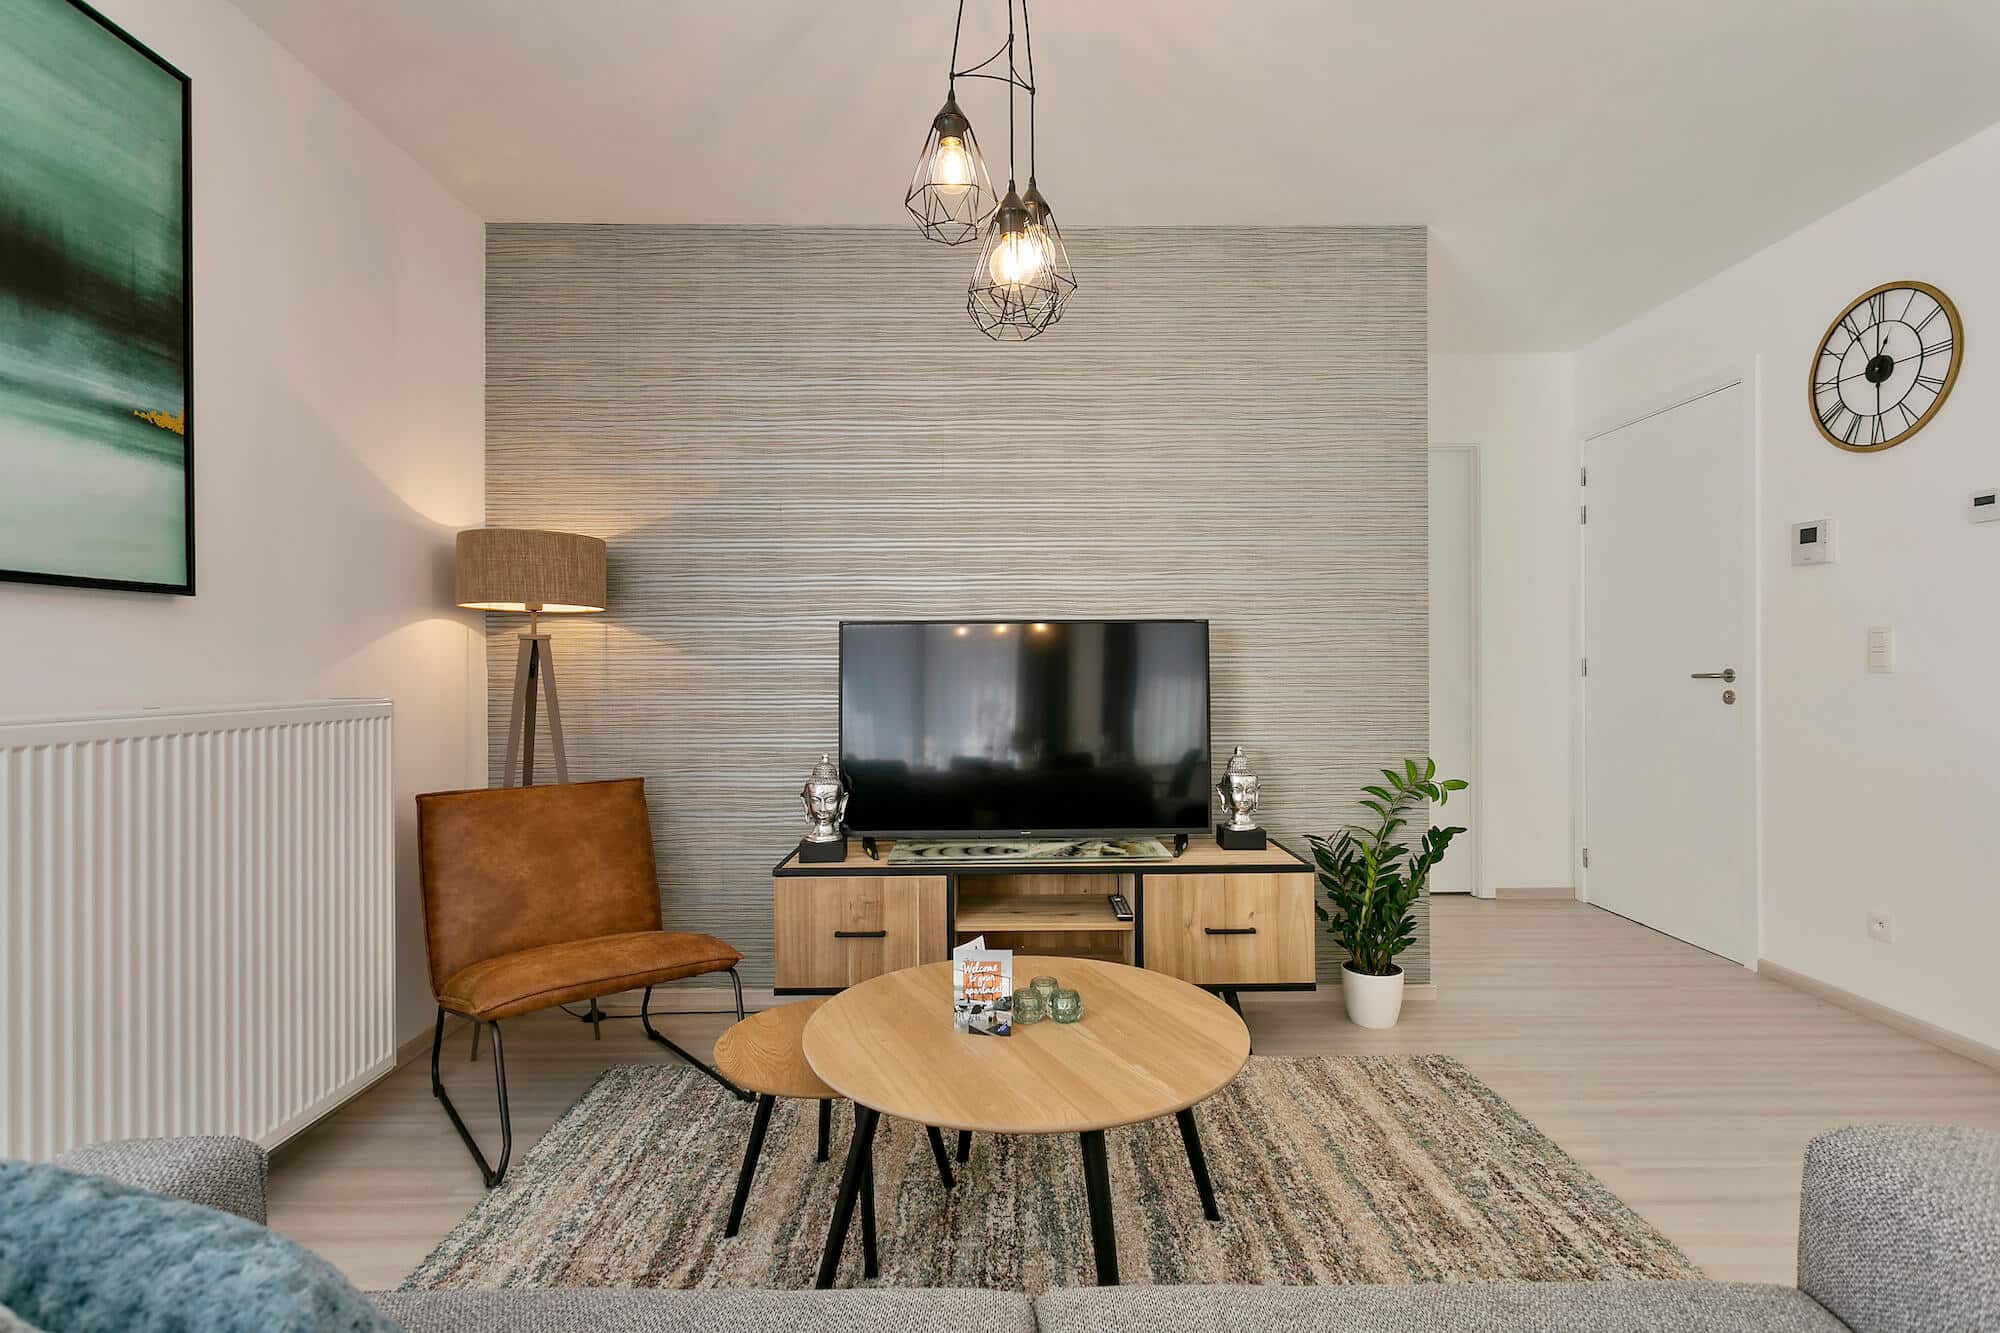 b-square appartement de deux chambres avec mobilier moderne et télévision par câble